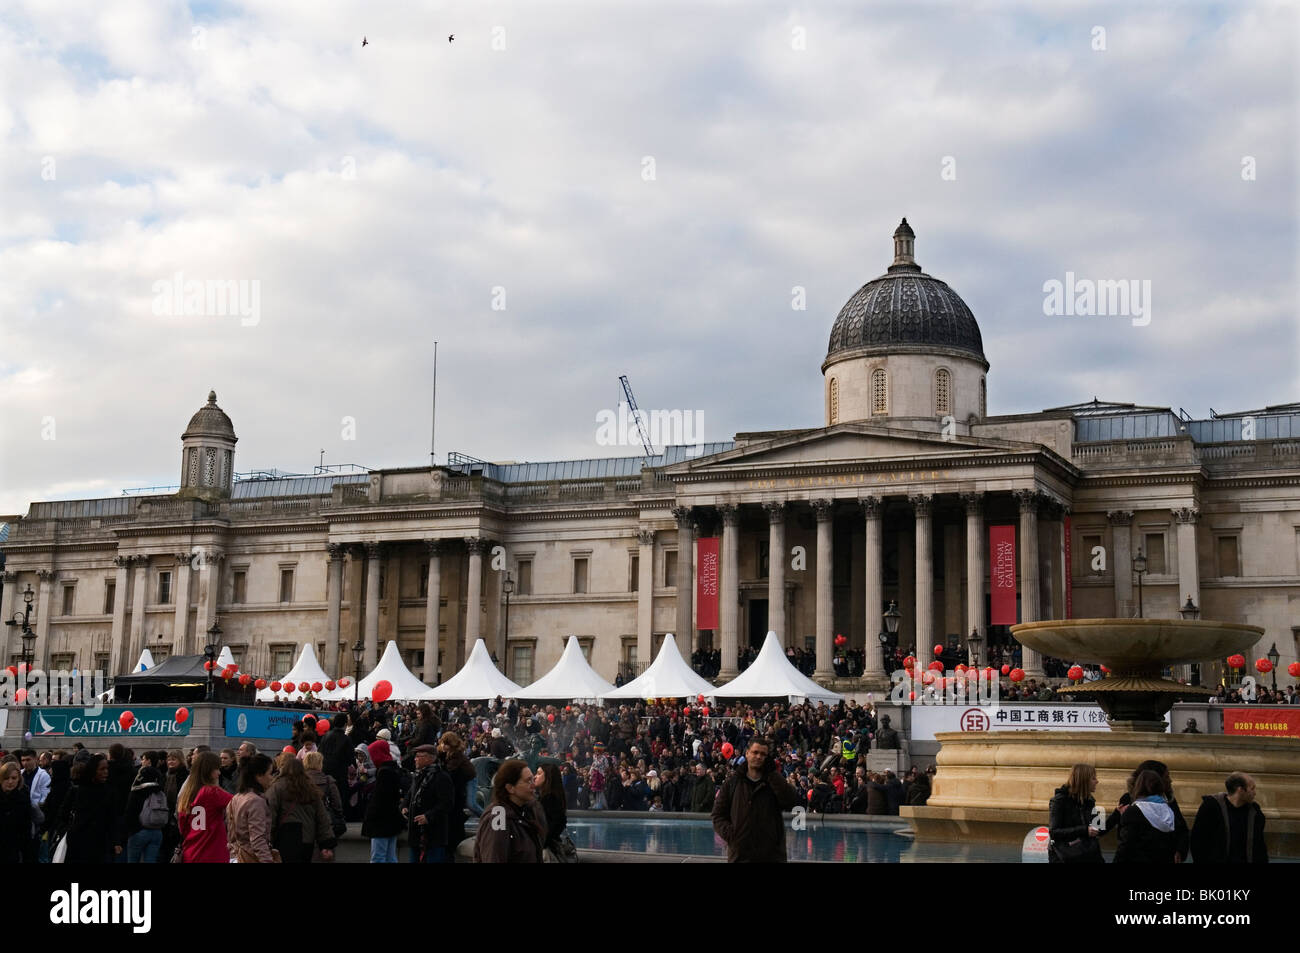 Les gens au festival du Nouvel An chinois à Trafalgar Square à Londres Angleterre Royaume-uni 2010 Banque D'Images